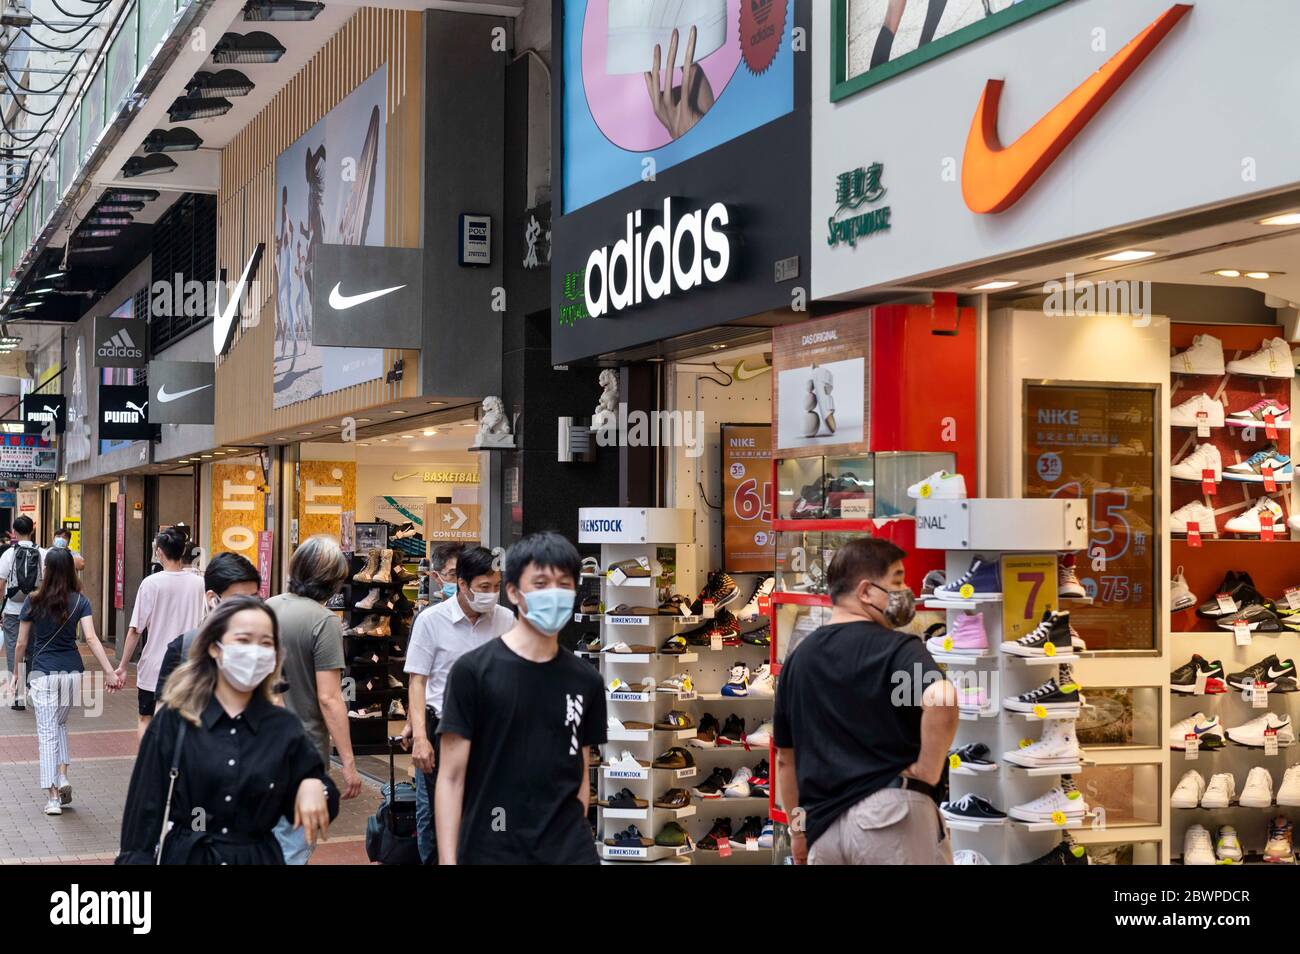 Hong Kong, China. 29 de mayo de 2020. Marcas multinacionales de ropa  deportiva Adidas, Puma y Nike logotipos vistos en una tienda en Hong Kong.  Crédito: Budrul Chukrut/SOPA Imágenes/ZUMA Wire/Alamy Live News